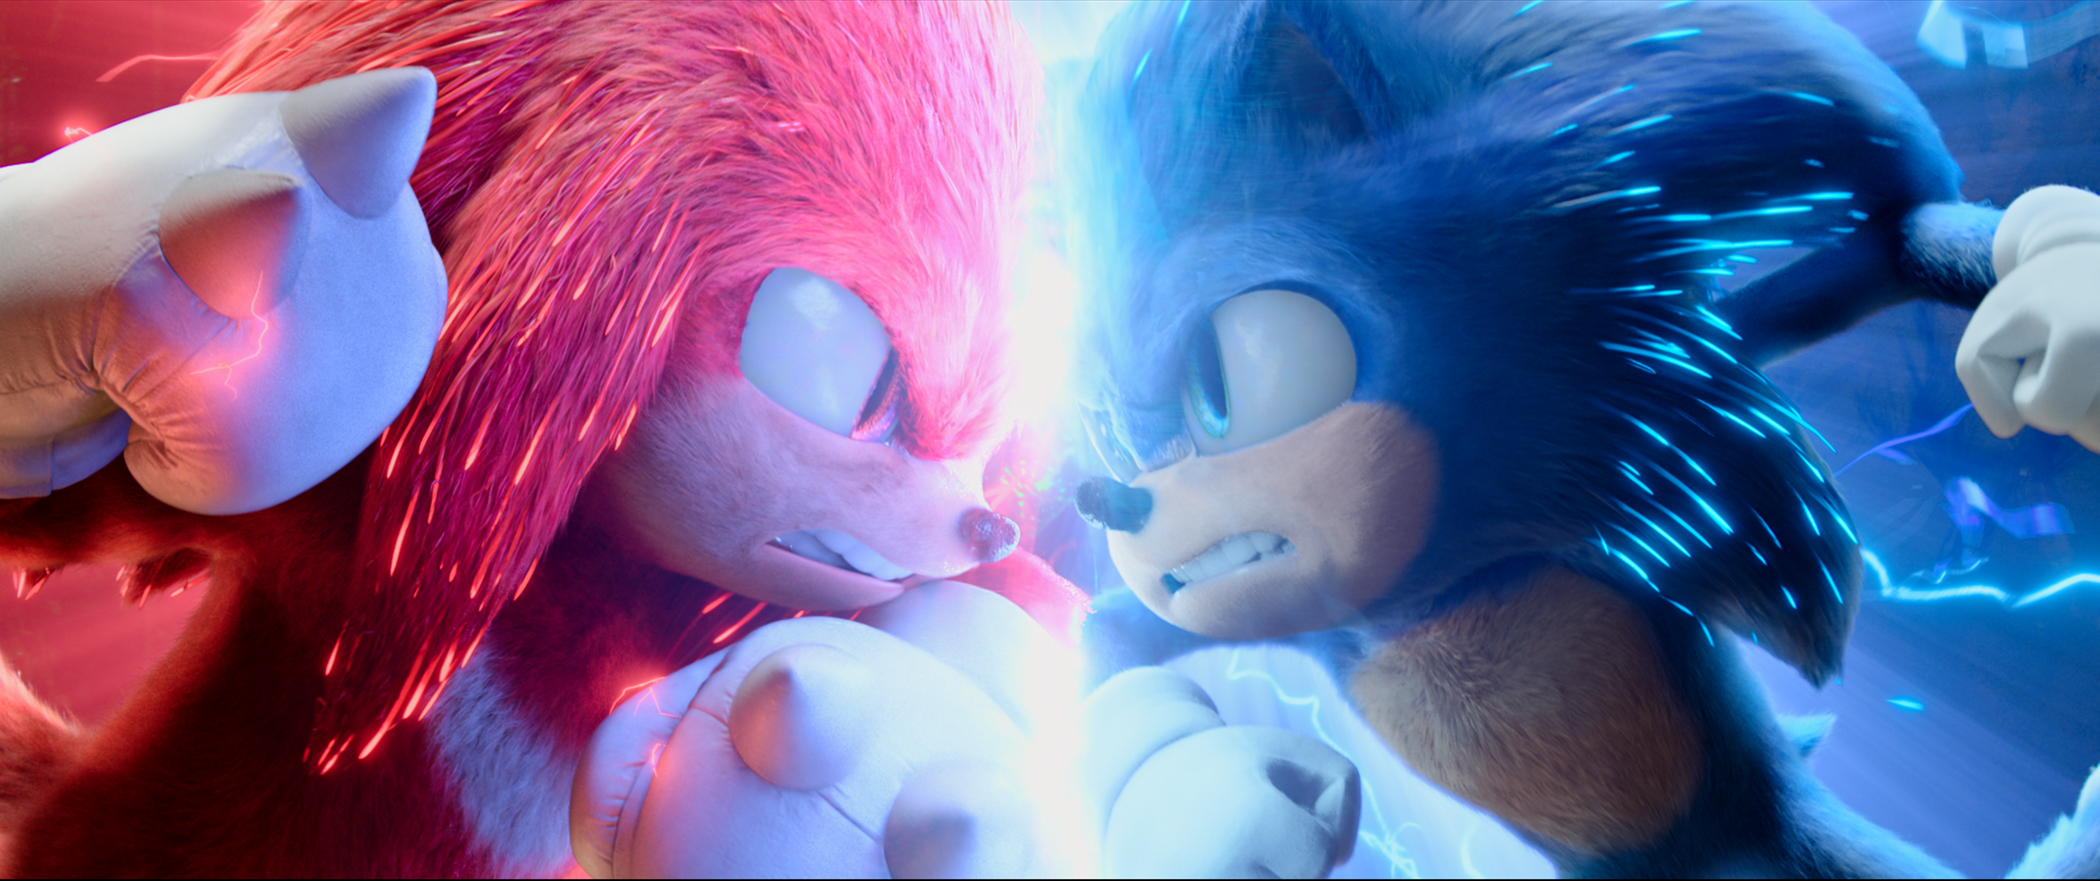 Knuckles (Idris Elba) and Sonic (Ben Schwartz) in Sonic The Hedgehog 2....